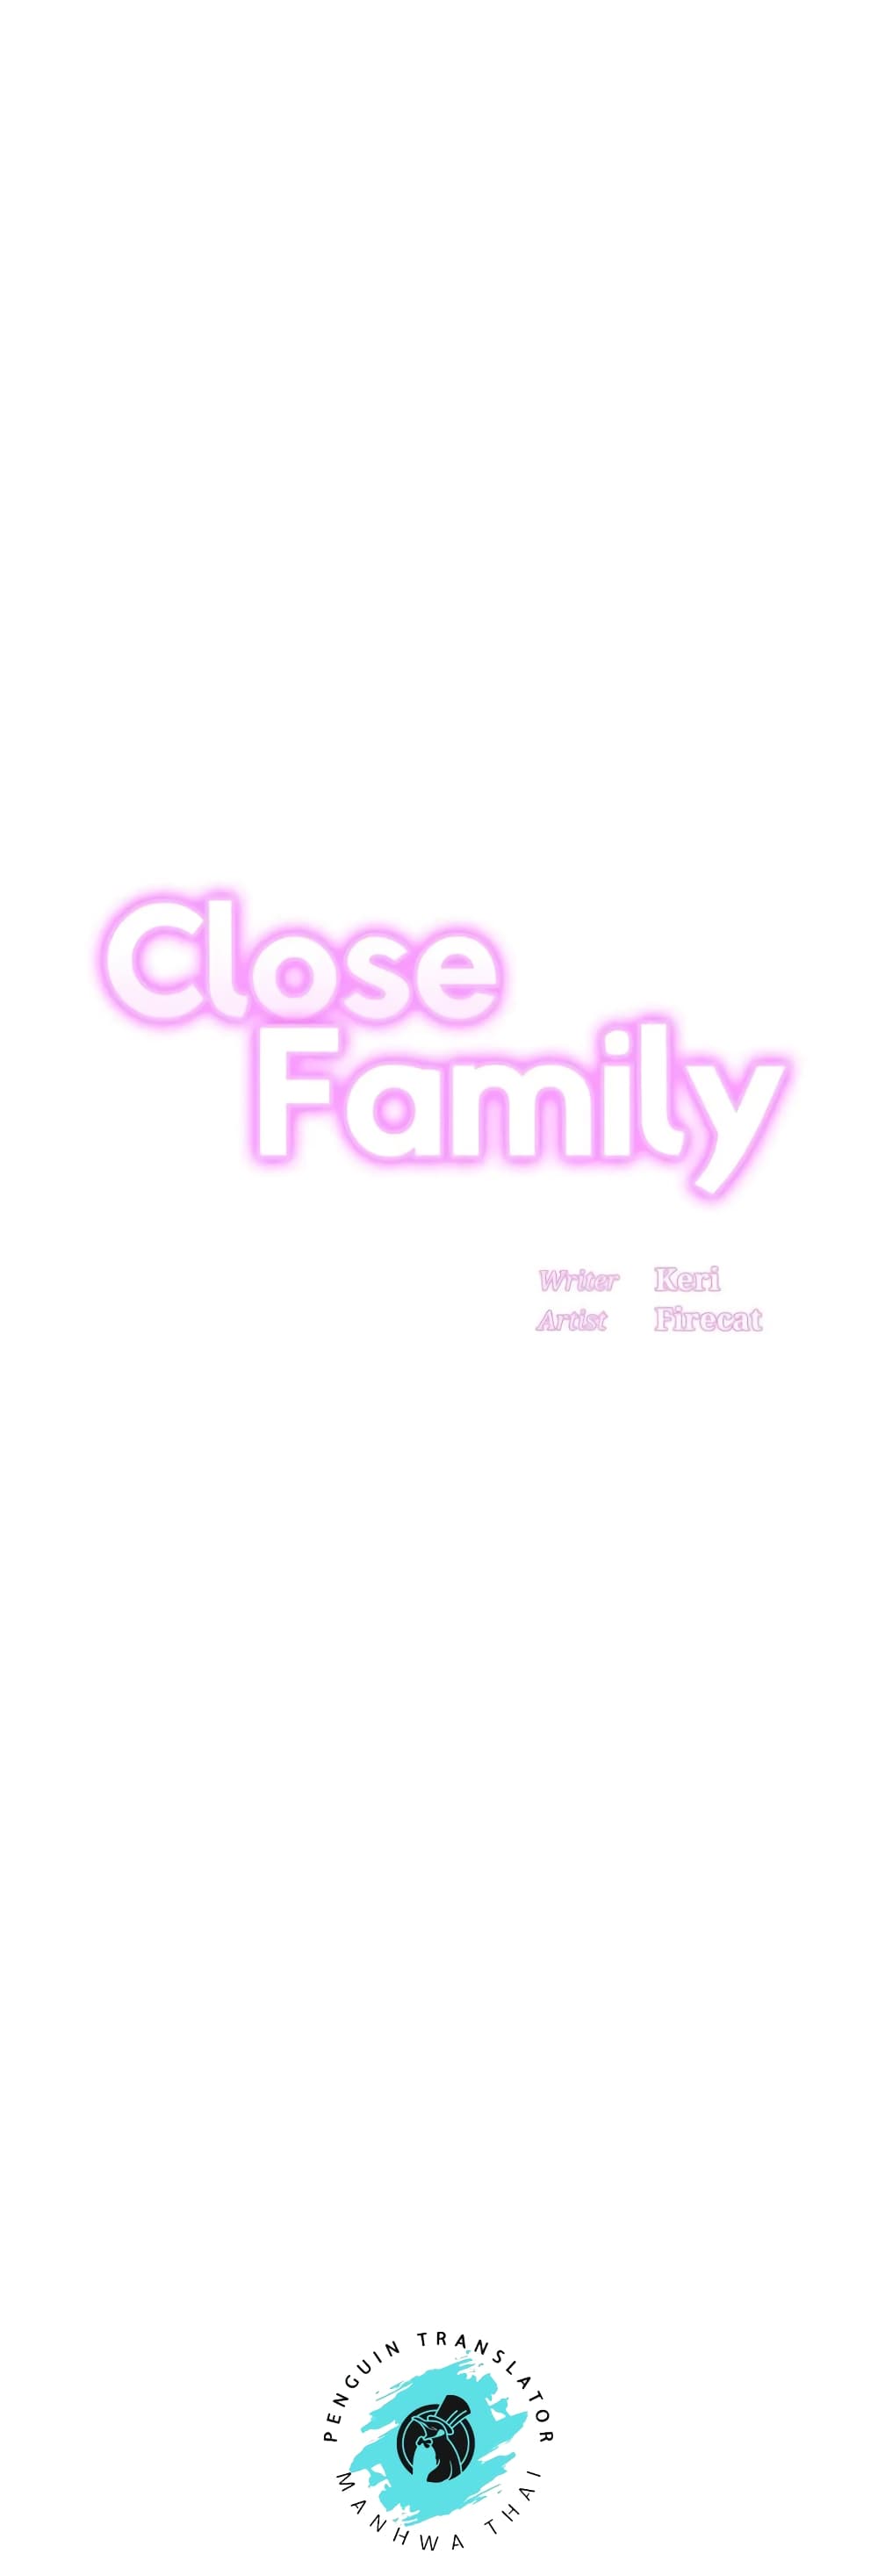 Close Family 49 01